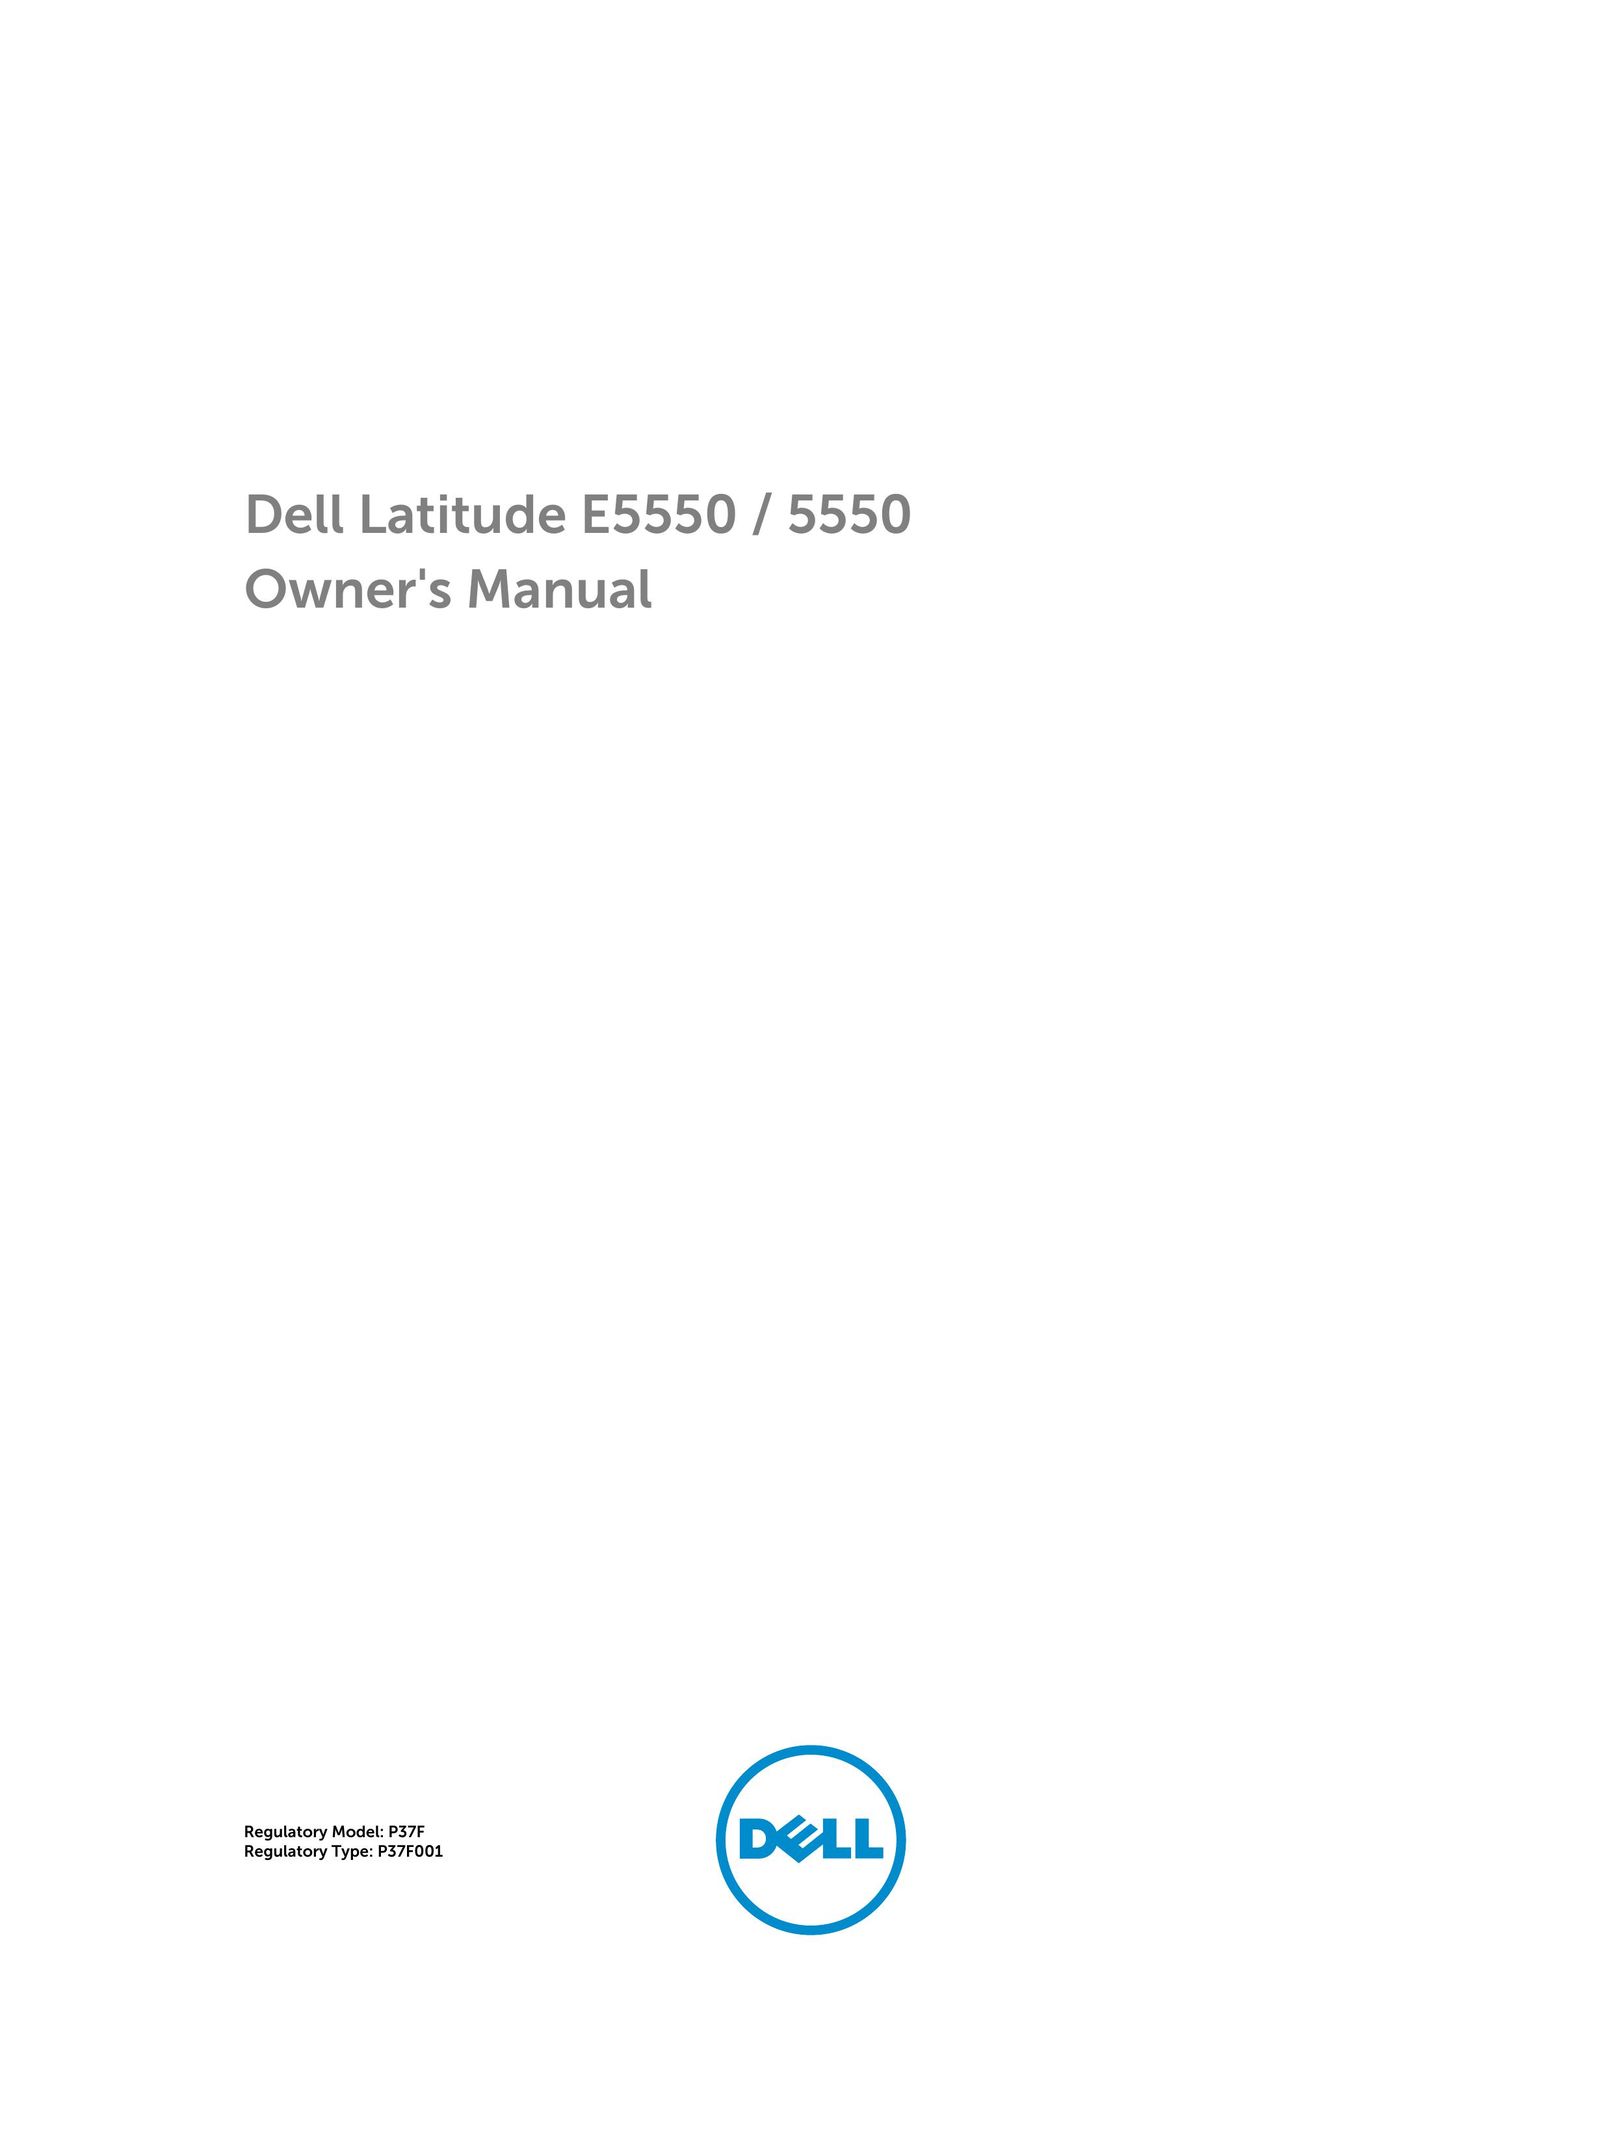 Dell E5550 Webcam User Manual